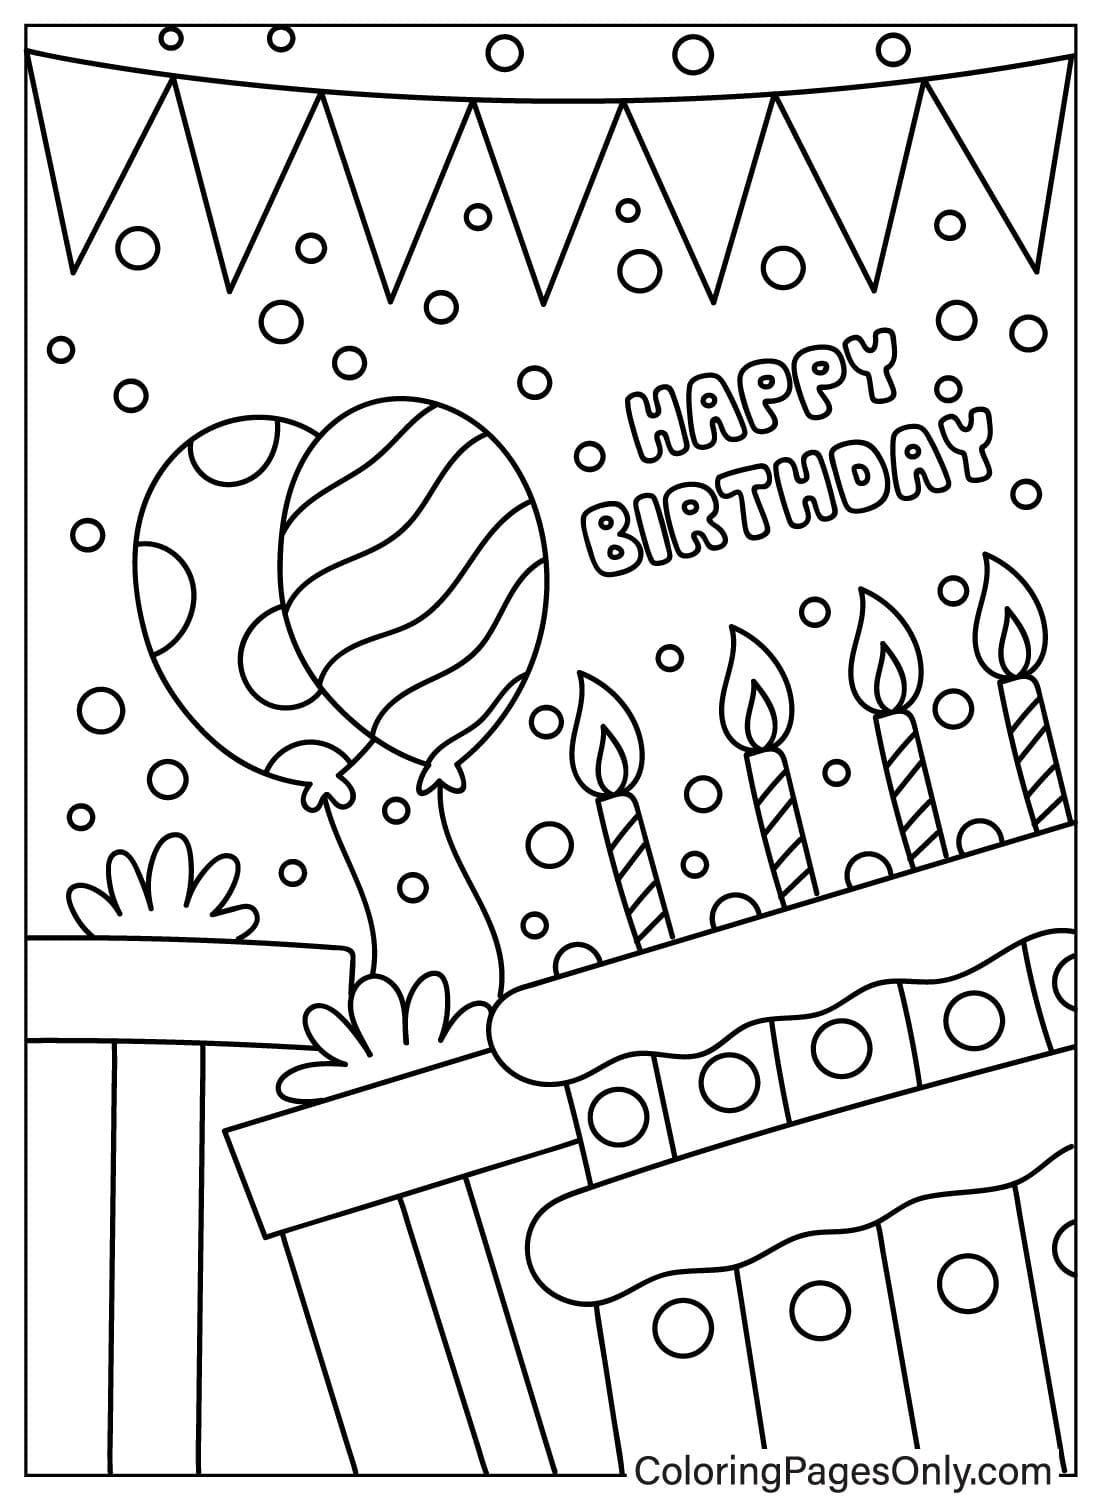 Página colorida do cartão de feliz aniversário do cartão de feliz aniversário